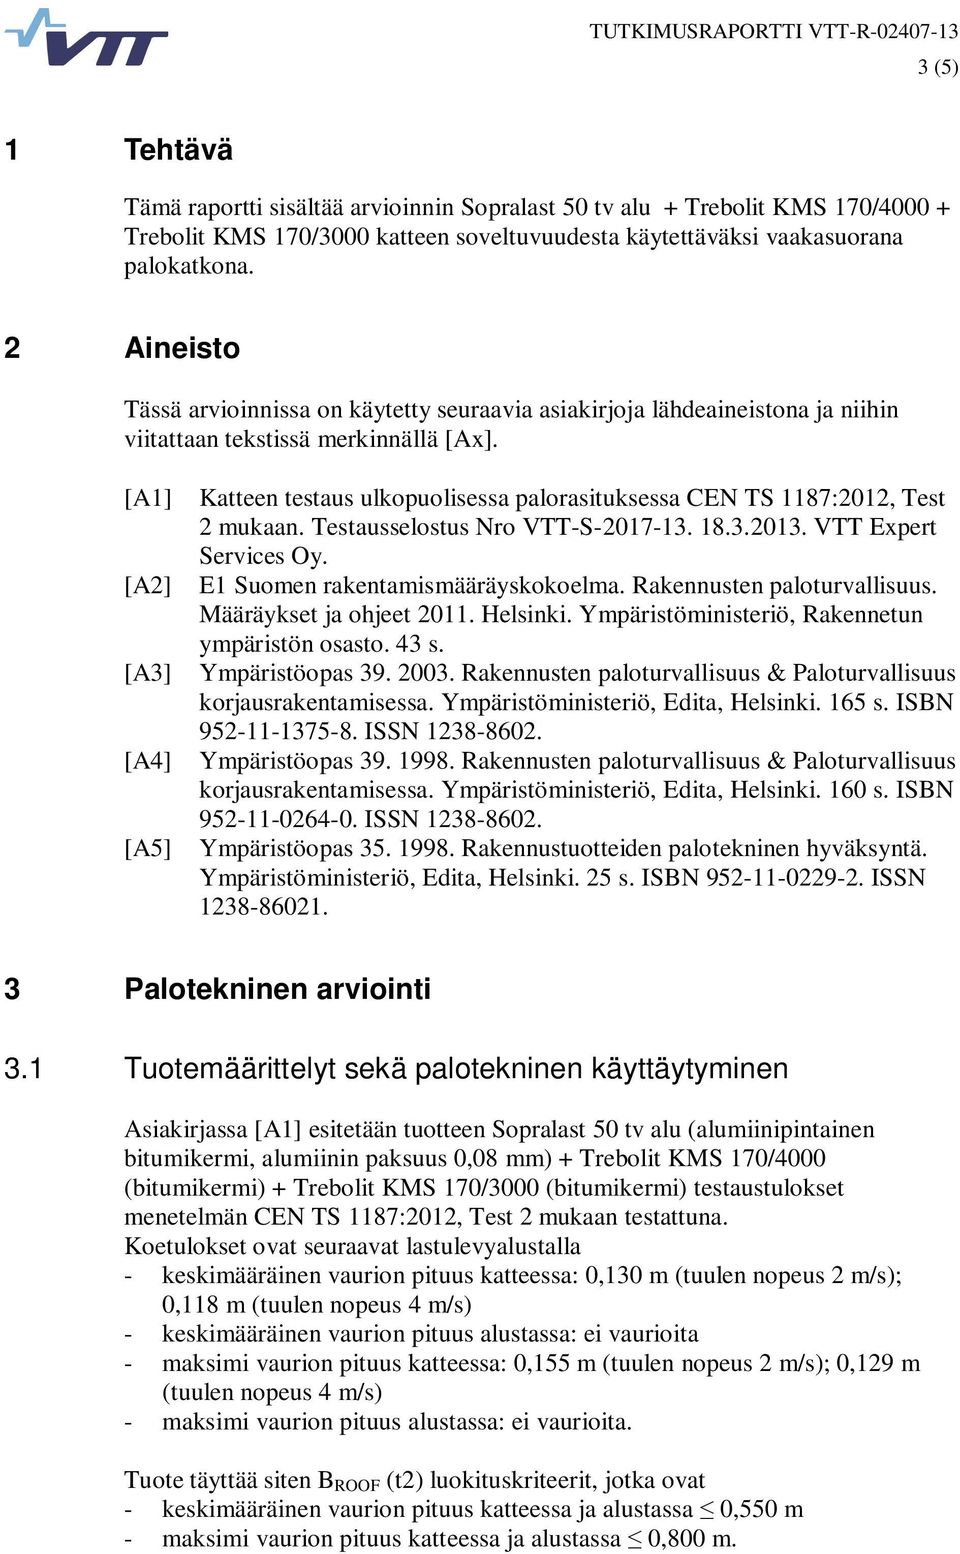 [A1] Katteen testaus ulkopuolisessa palorasituksessa CEN TS 1187:2012, Test 2 mukaan. Testausselostus Nro VTT-S-2017-13. 18.3.2013. VTT Expert Services Oy. [A2] E1 Suomen rakentamismääräyskokoelma.